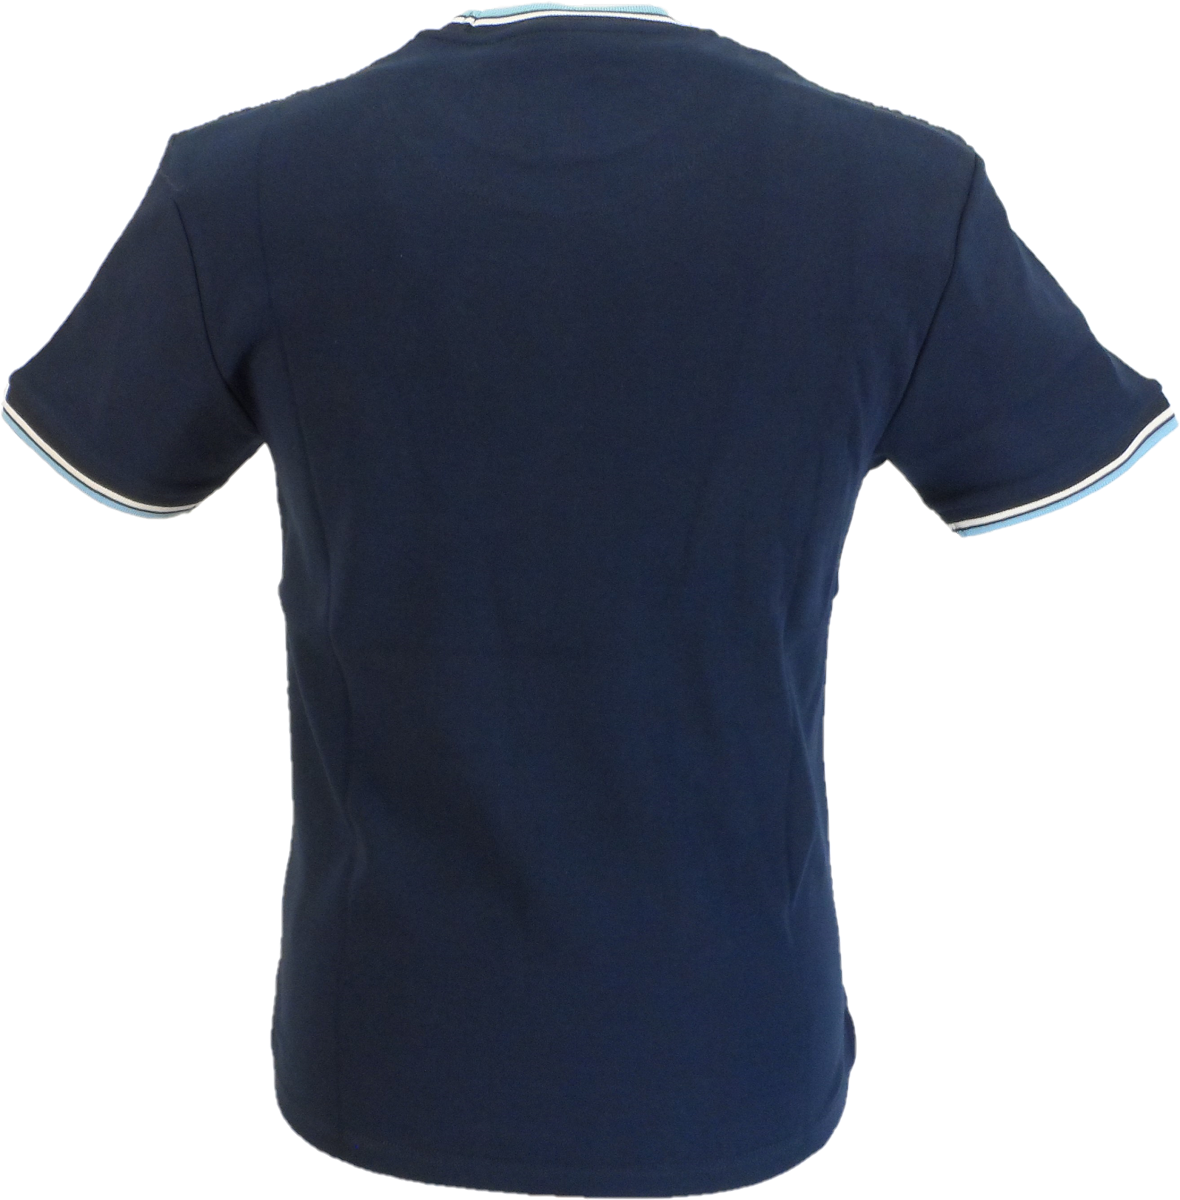 Trojan Mens Navy Blue Geometric Arrow Pattern T Shirt